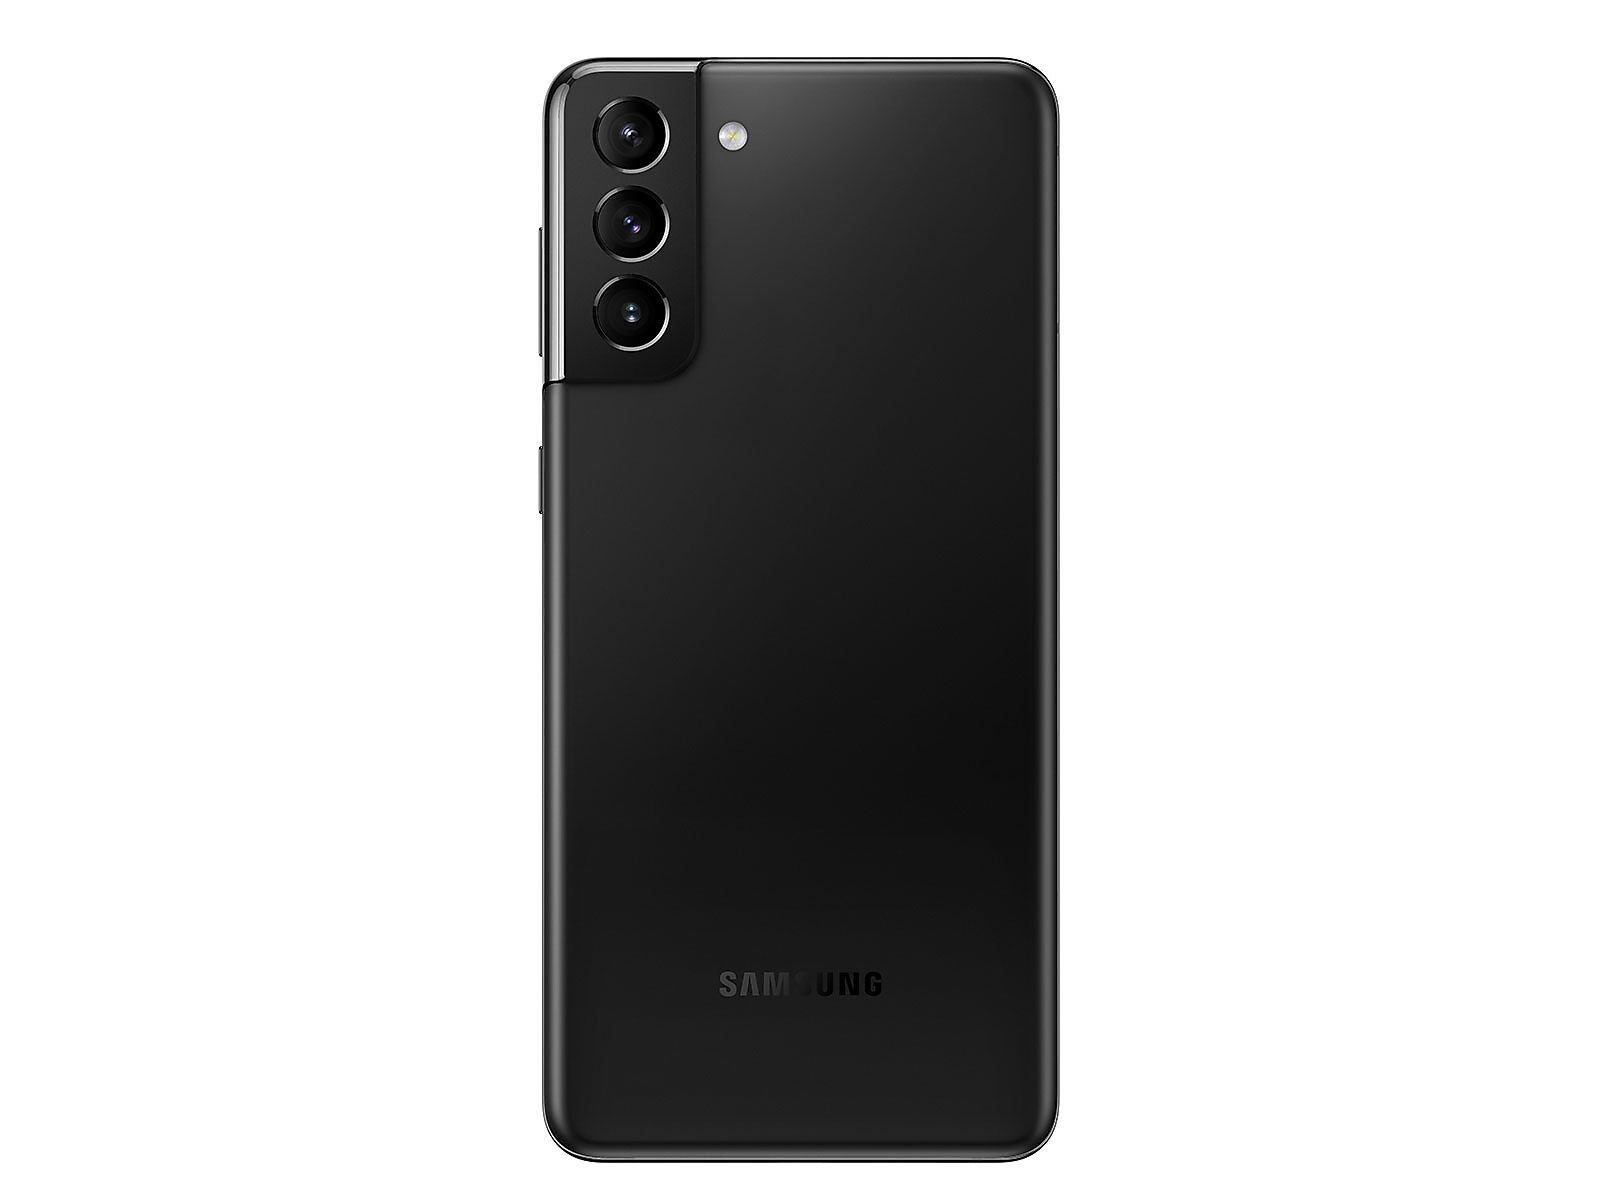 Samsung Galaxy S21+ 5G 128GB in Phantom Black (AT&T)(SM-G996UZKAATT)